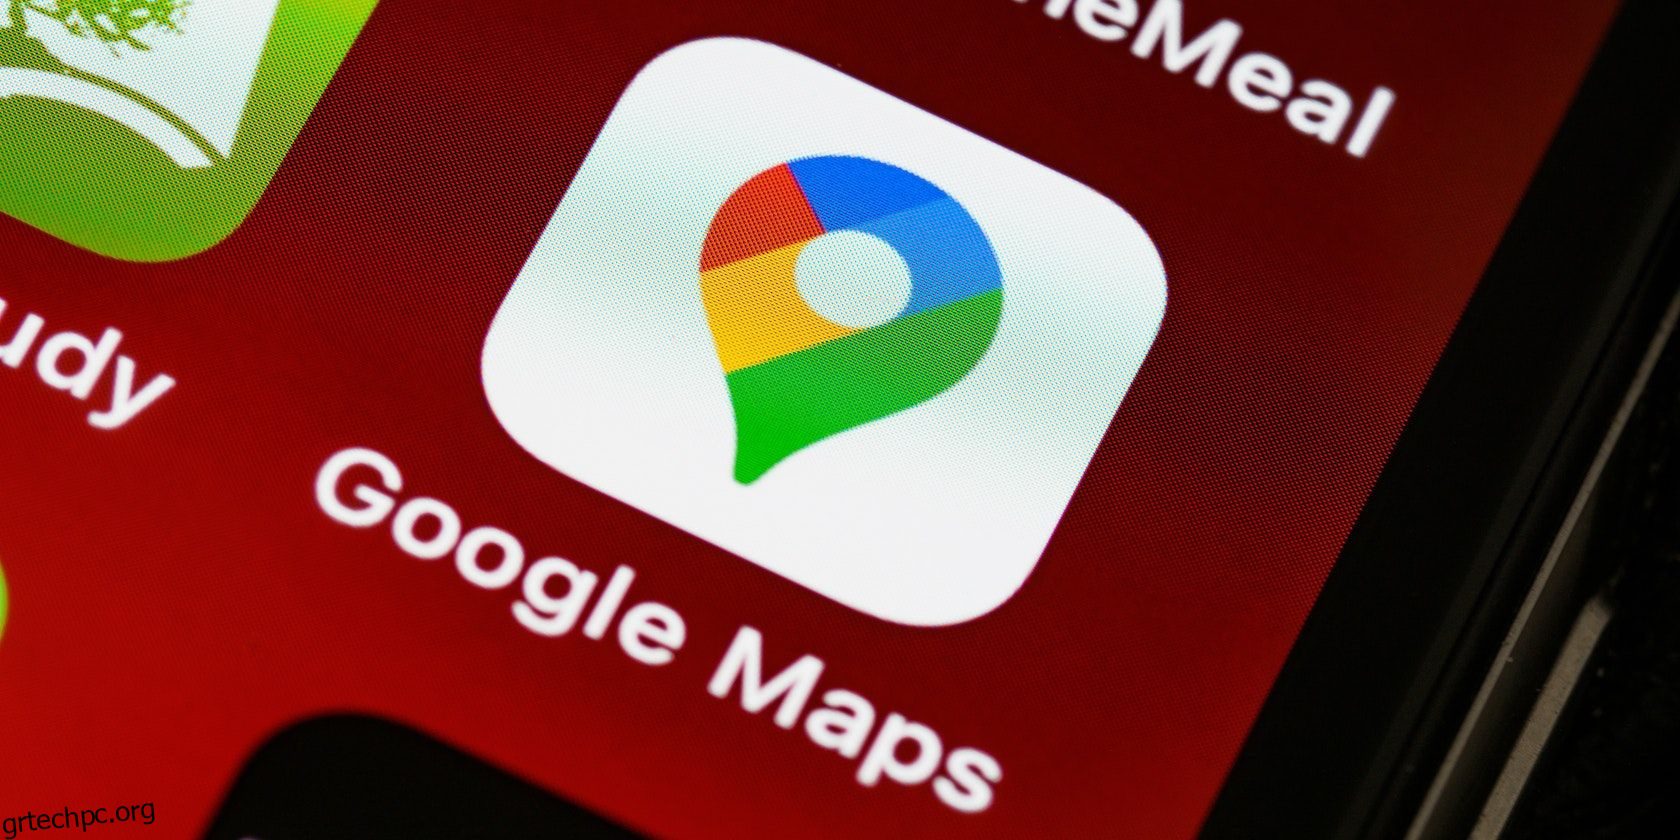 Πώς να αποφύγετε διόδια και αυτοκινητόδρομους χρησιμοποιώντας τους Χάρτες Google